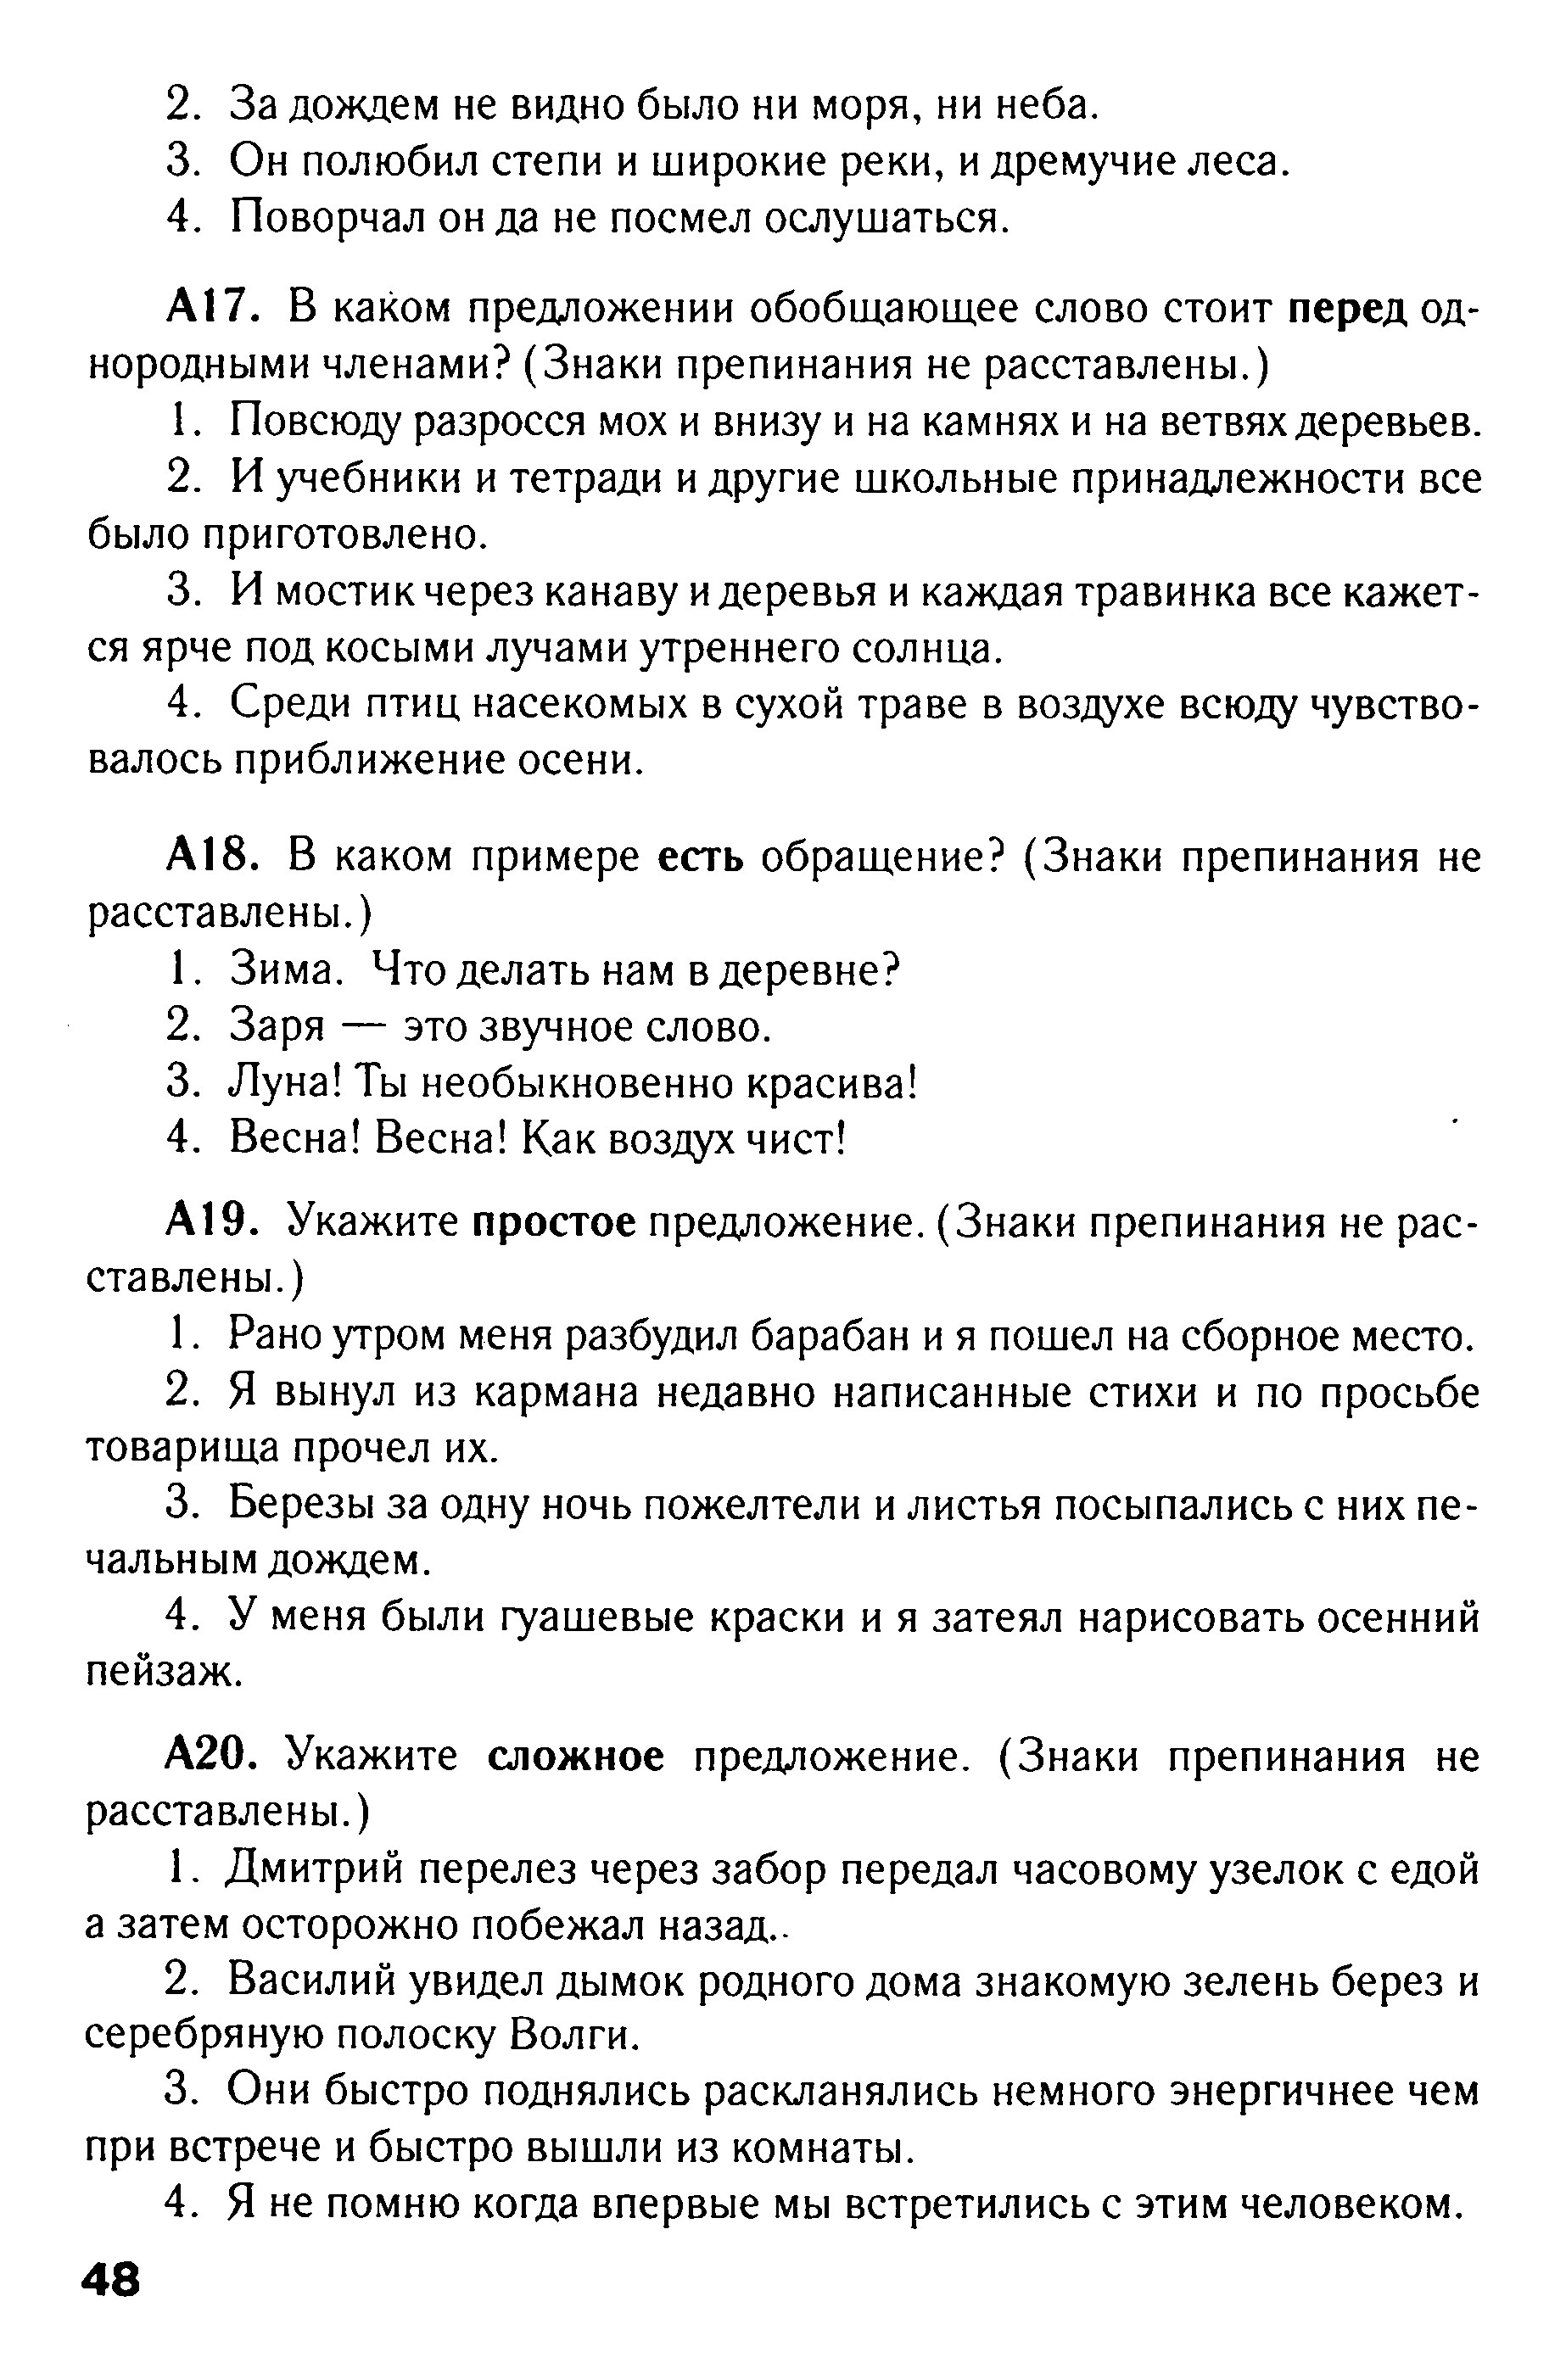 Тест по русскому языку в формате ГИА на тему: Синтаксис вариант 1 (5 класс)